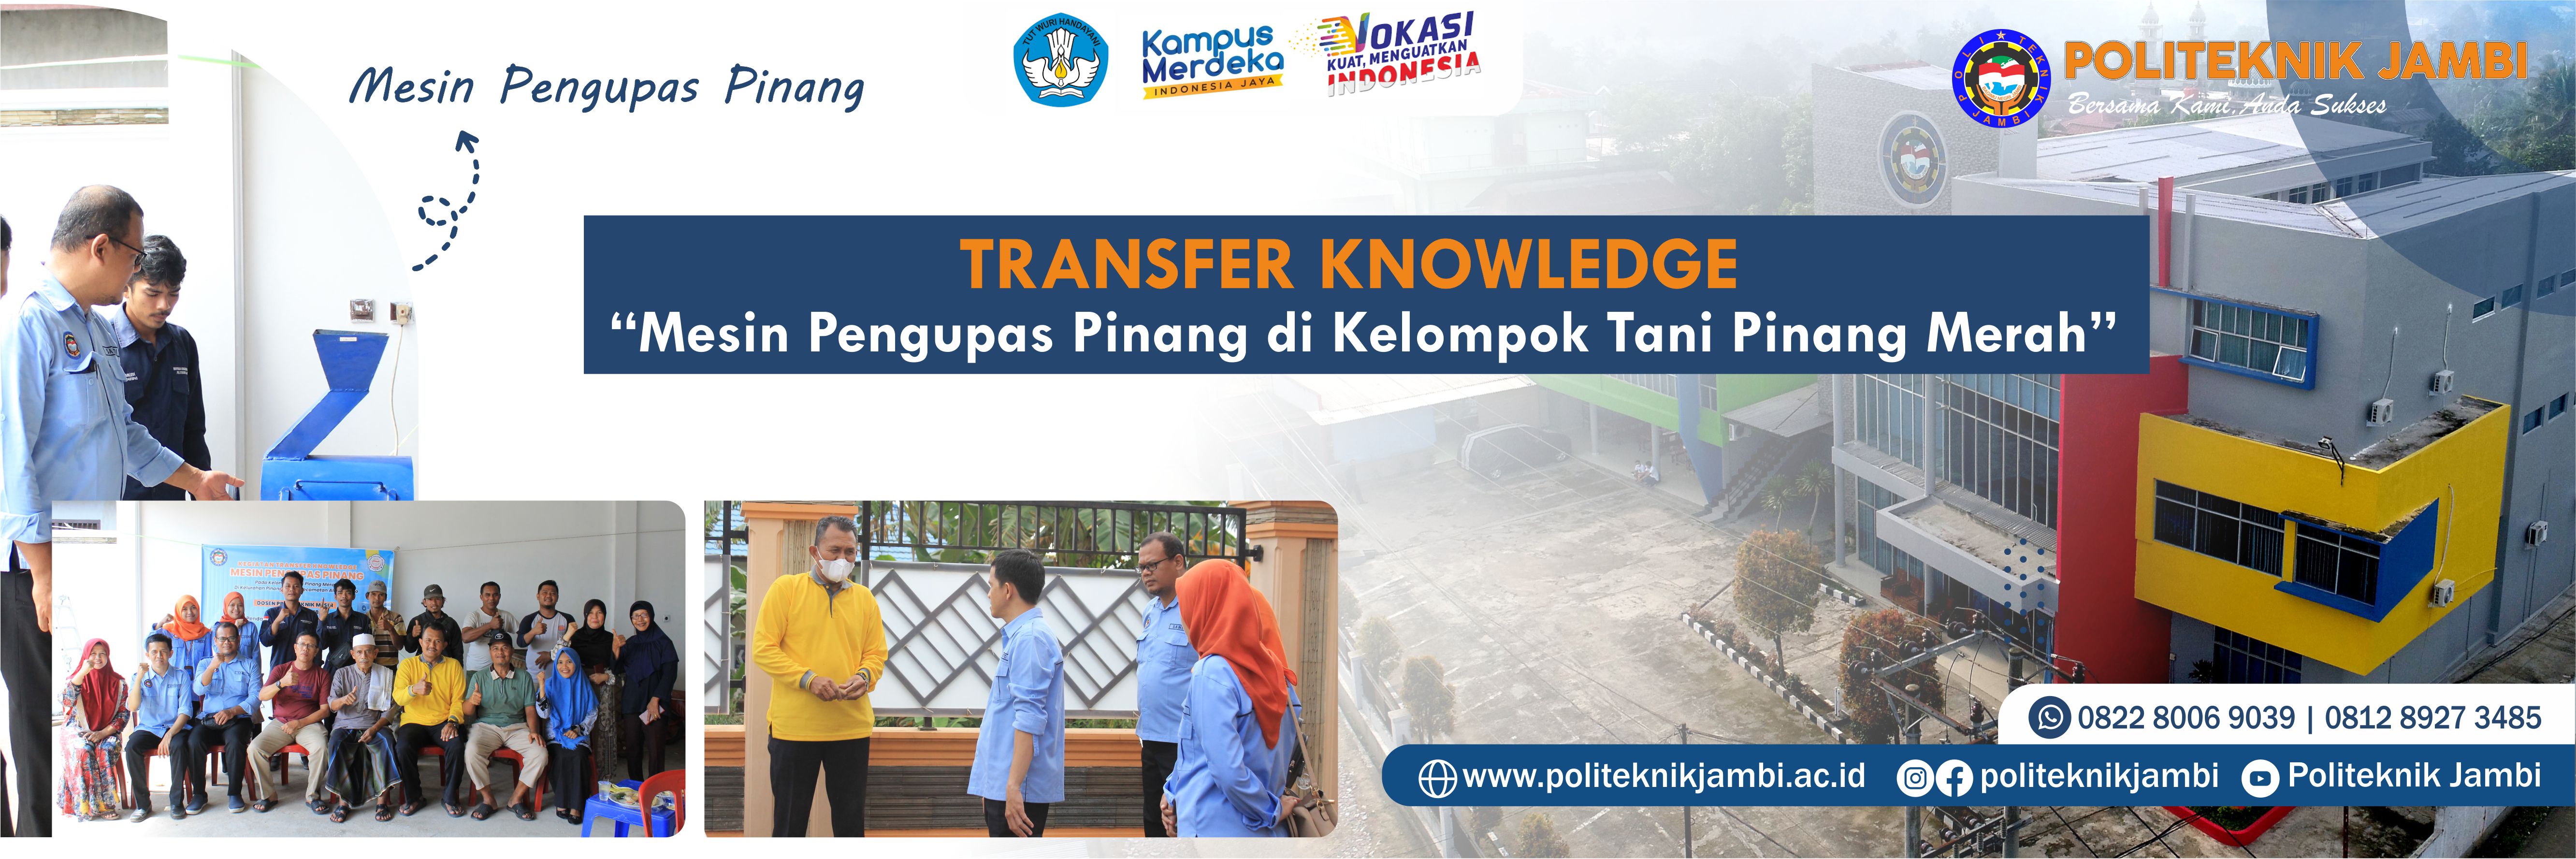 Transfer Knowledge Mesin Pengupas Pinang di Kelompok Tani Pinang Merah